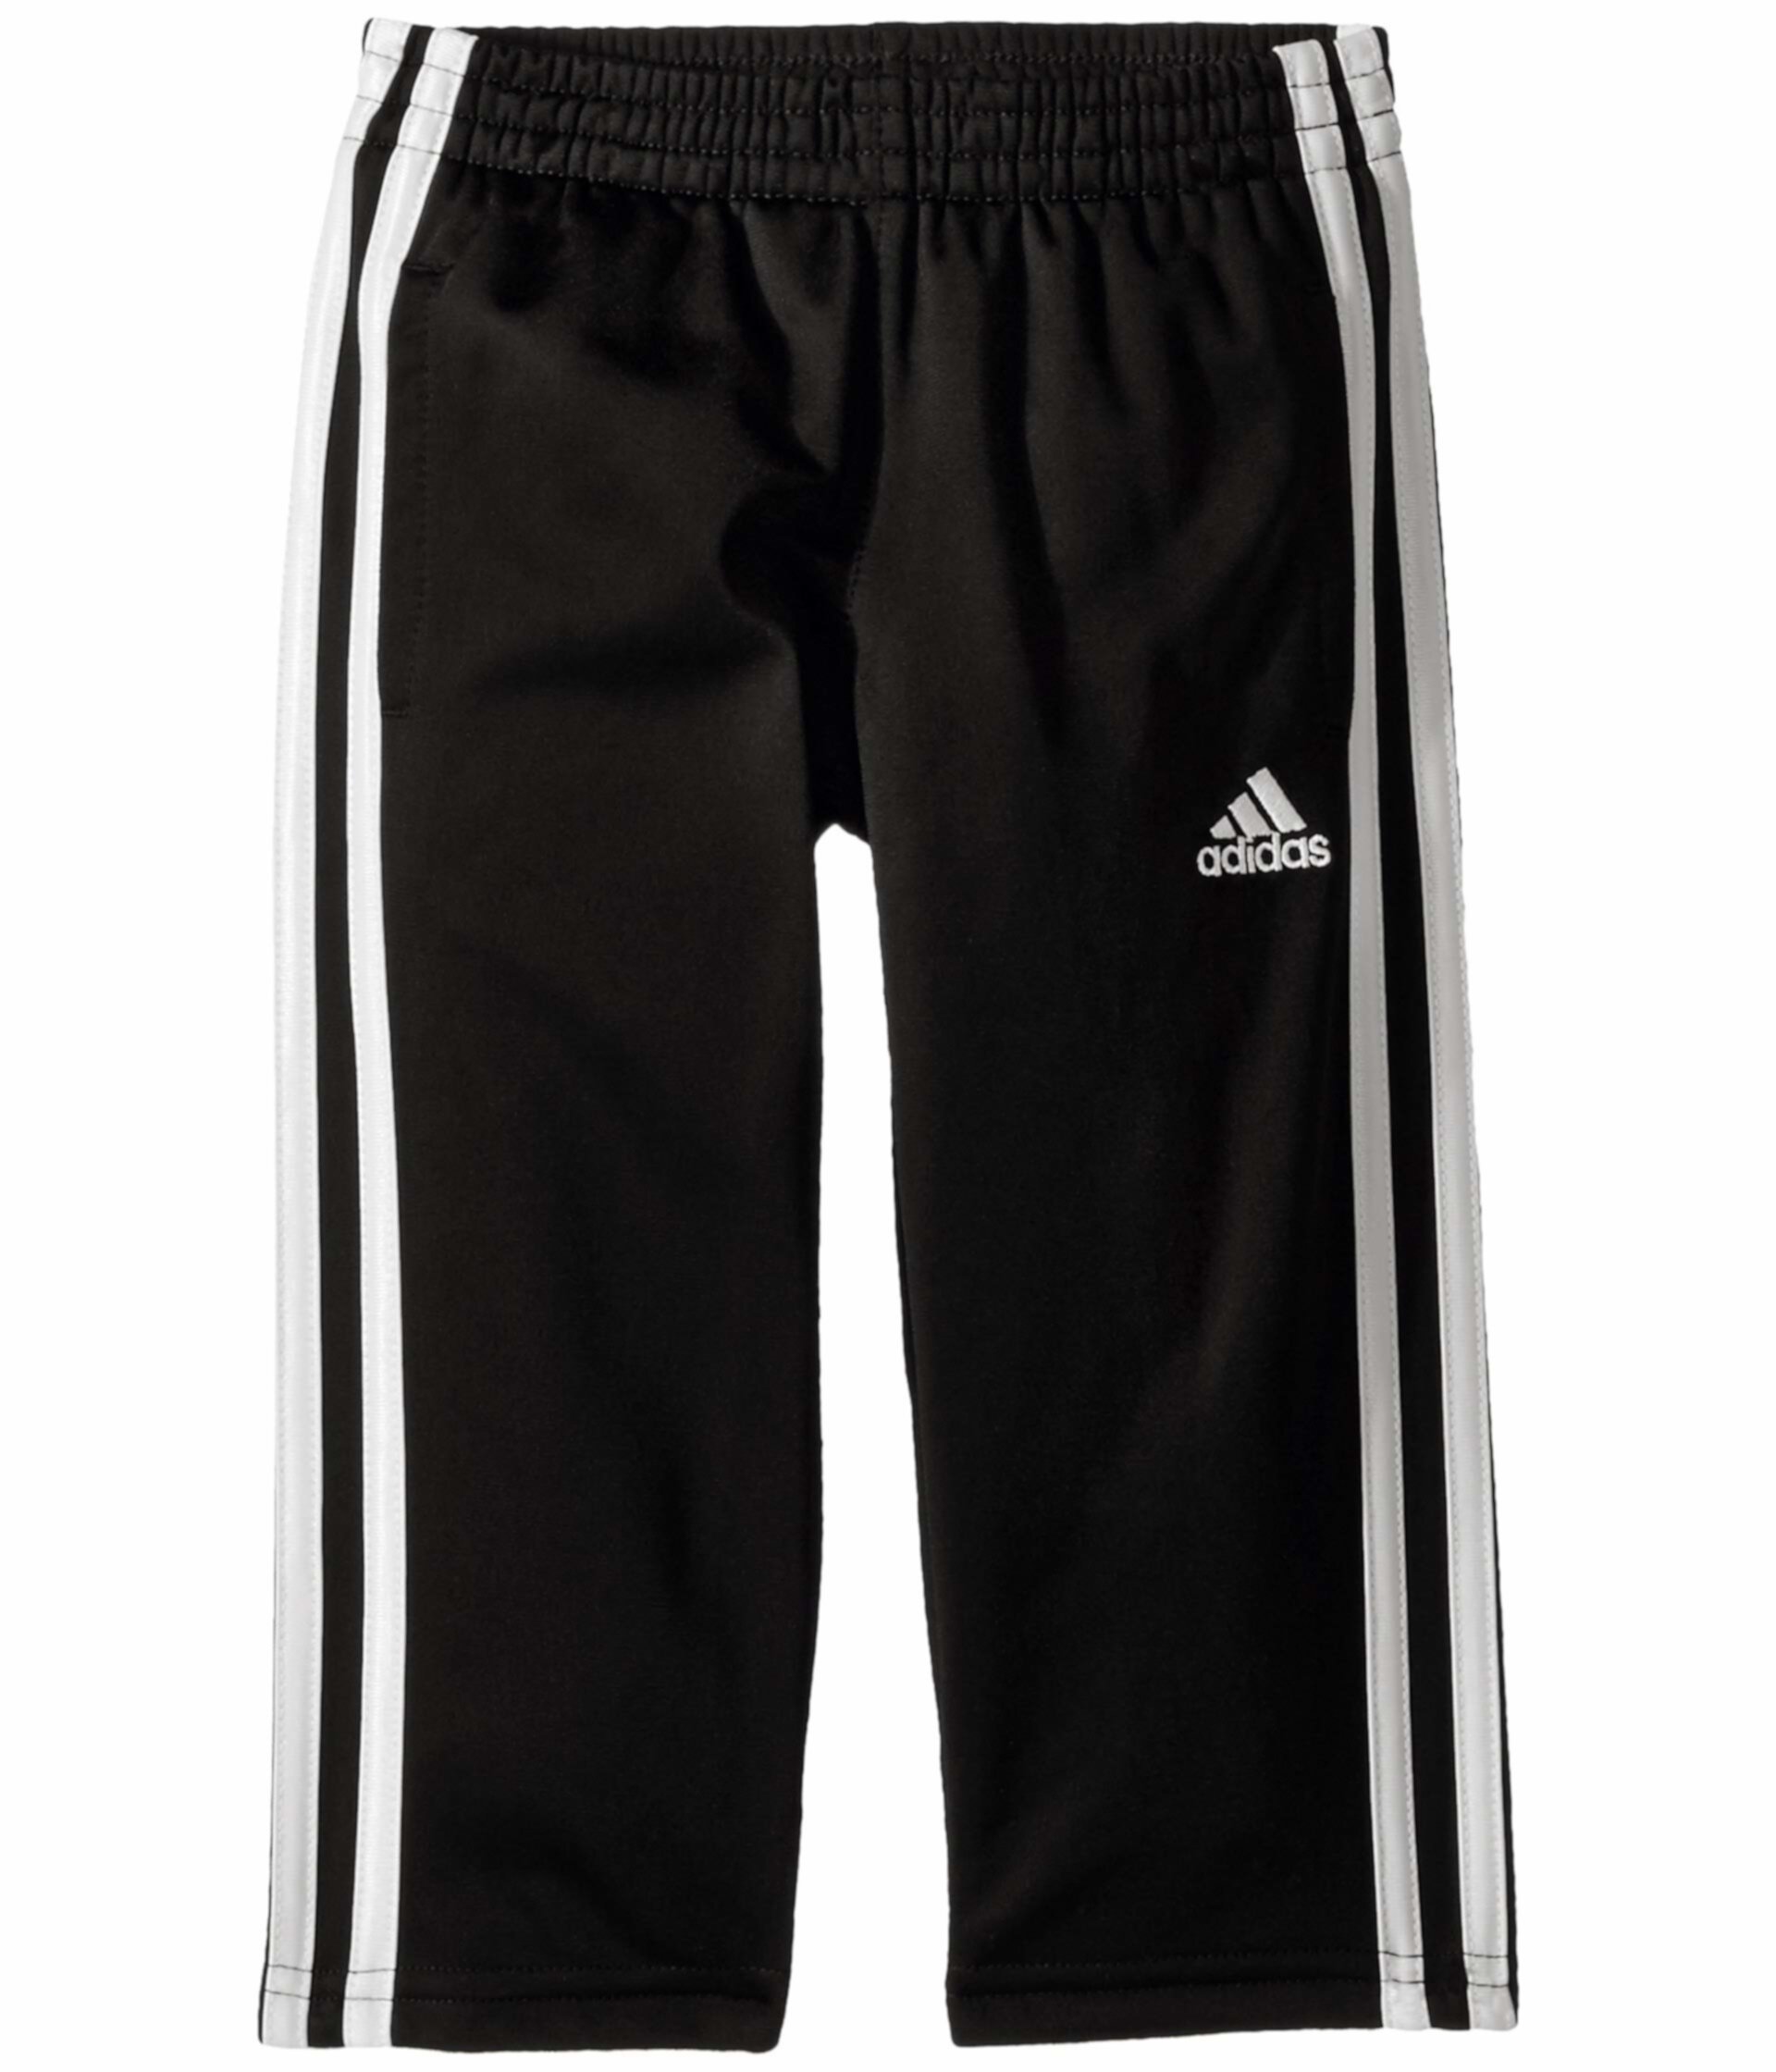 Replen Iconic Tricot Pants (для малышей / маленьких детей) Adidas